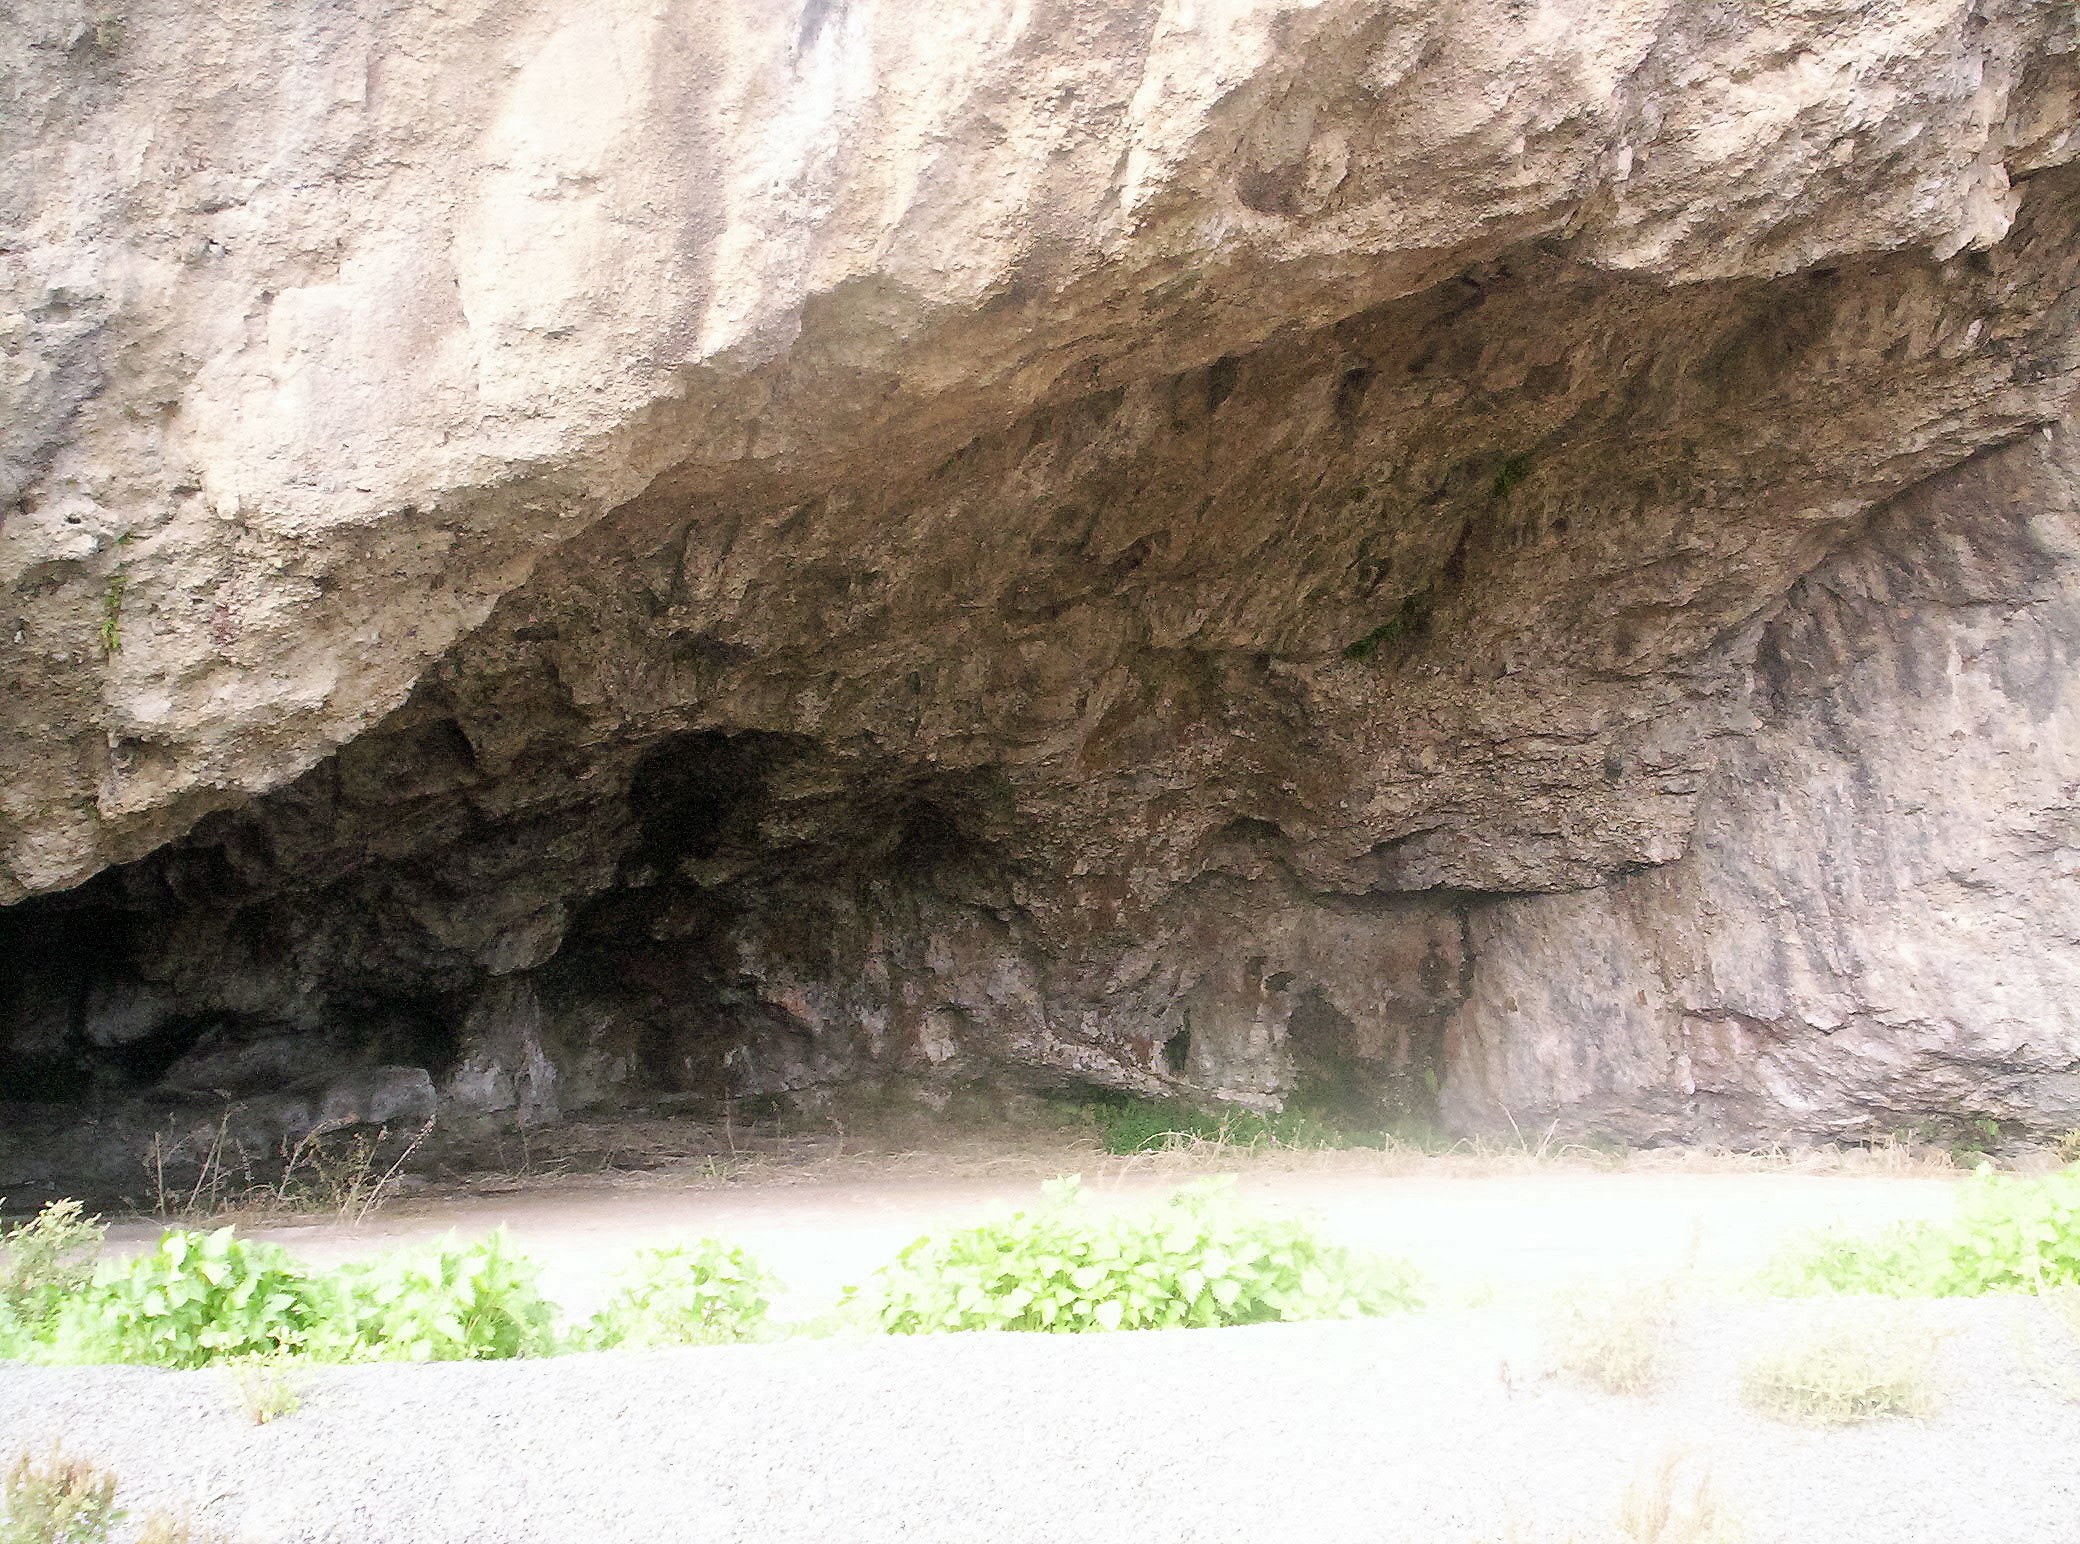 palikè, the cave